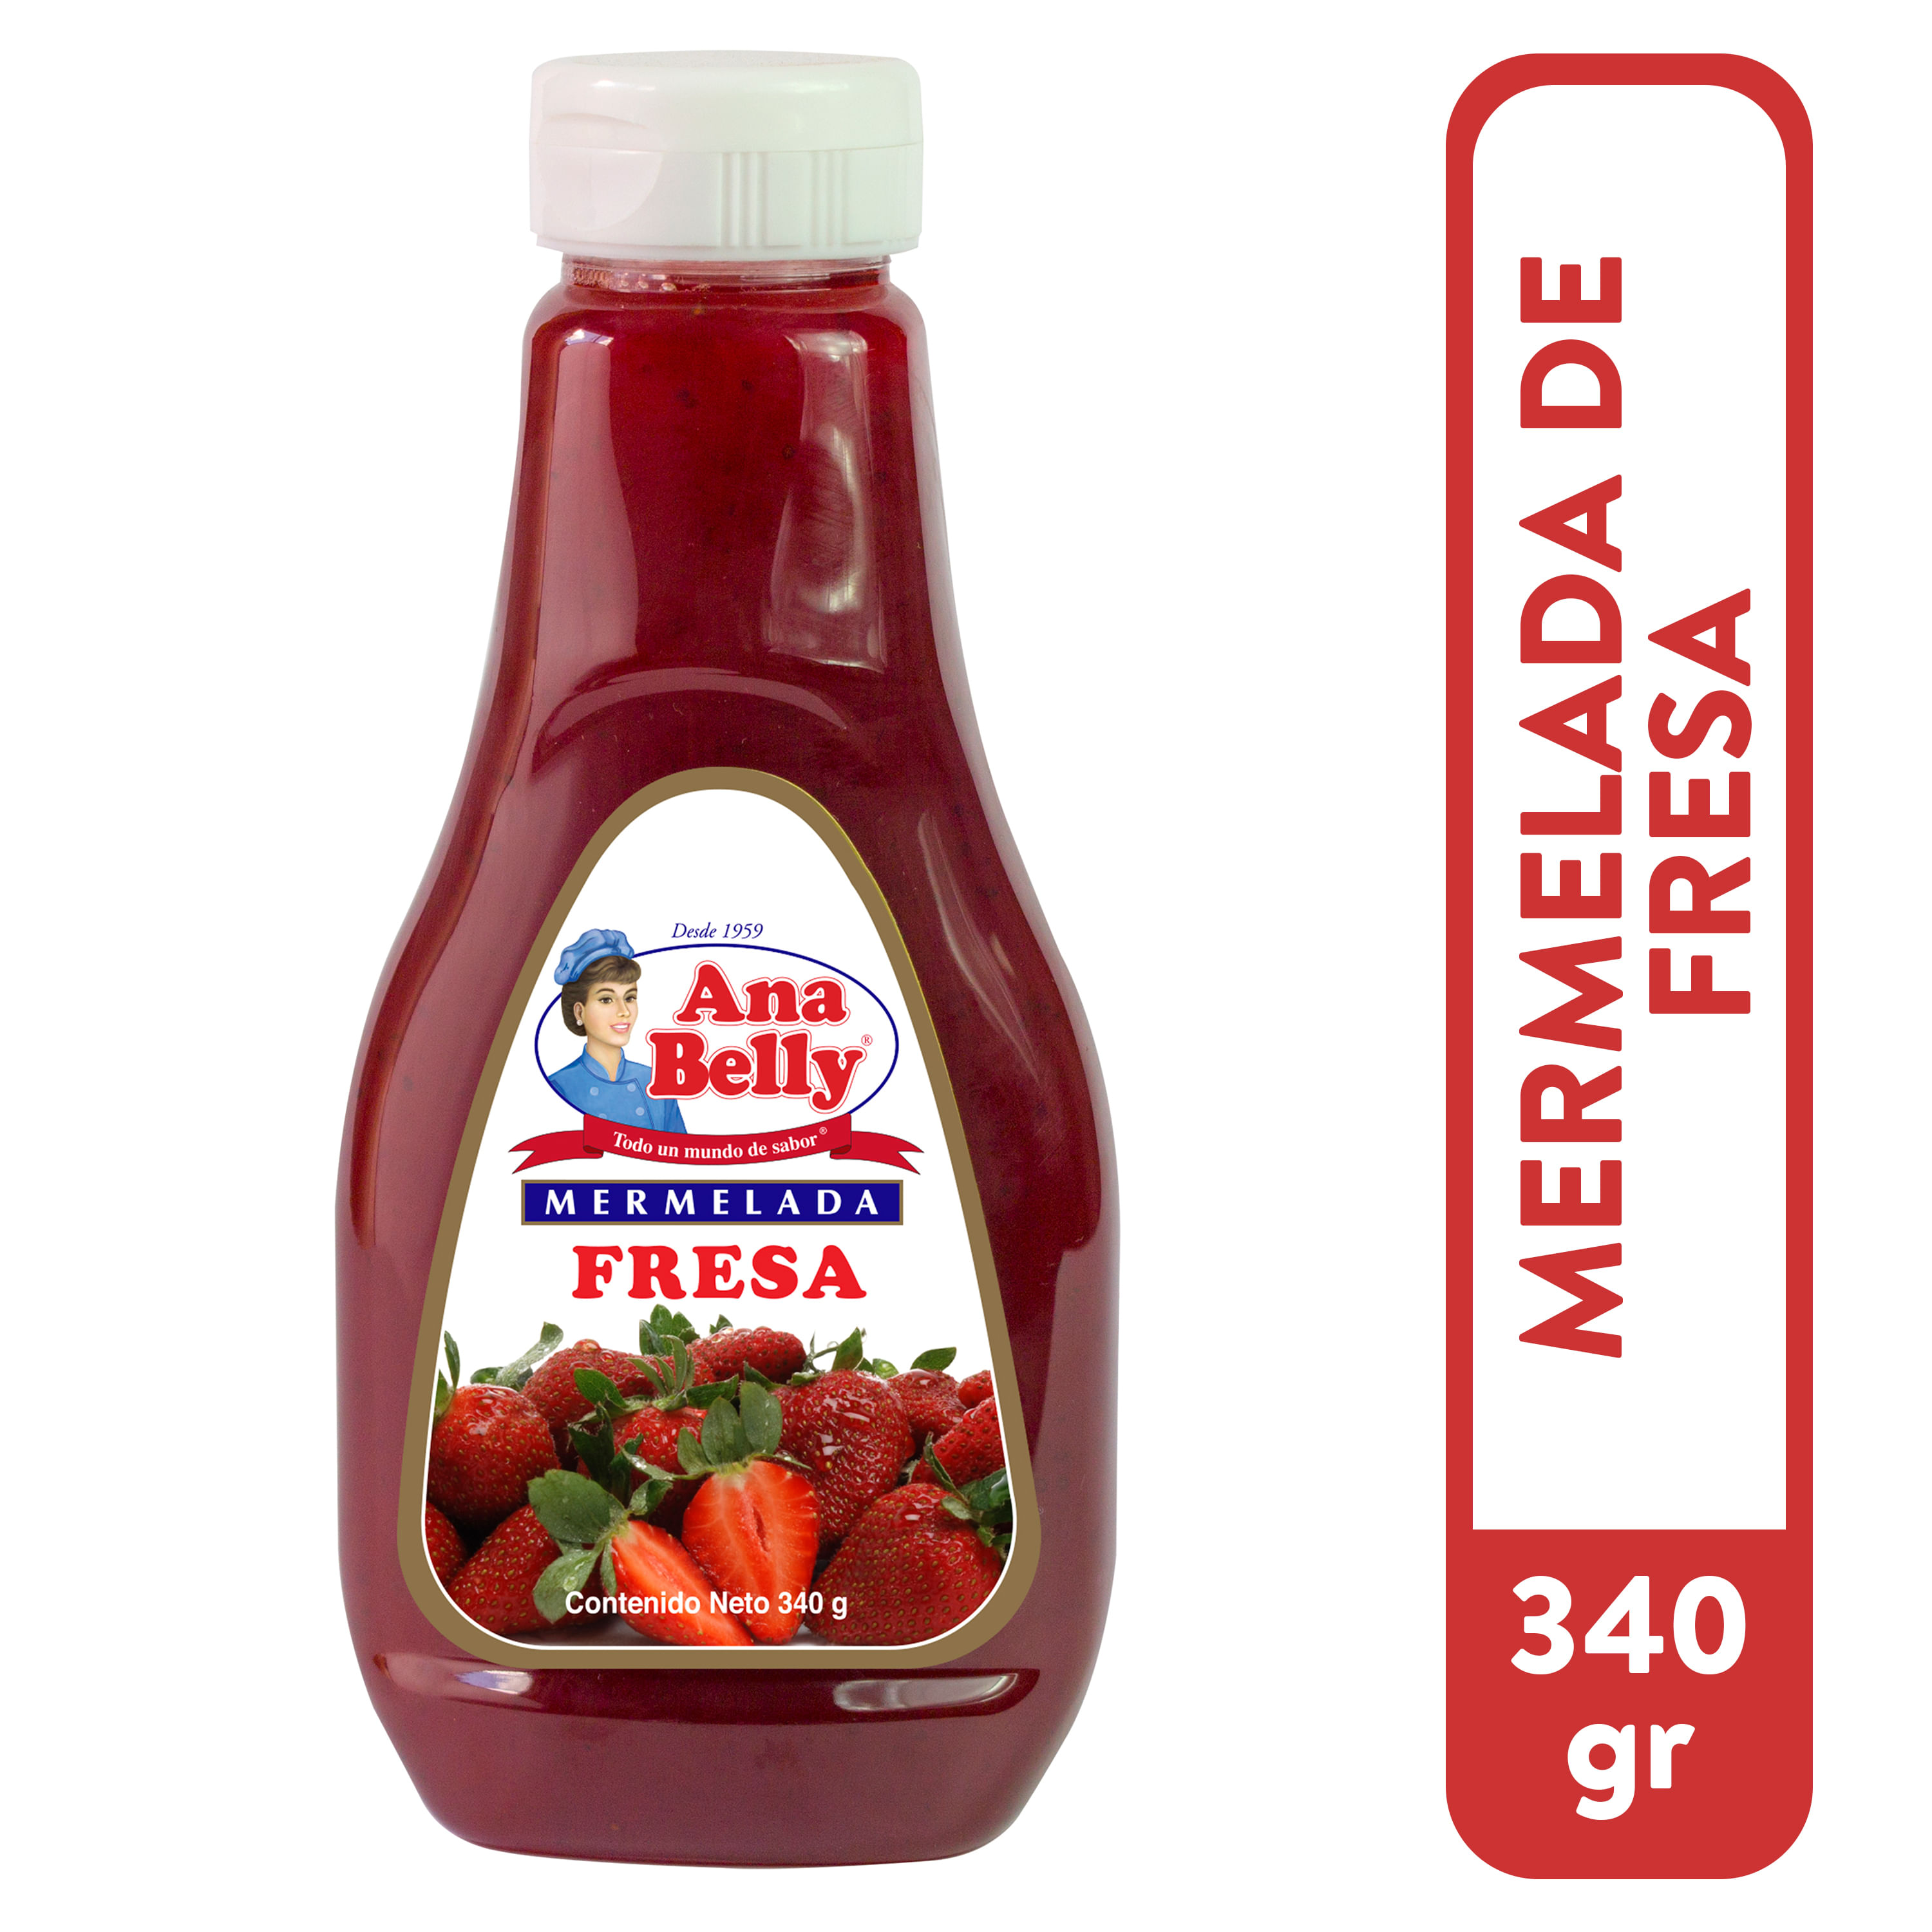 Mermelada-Ana-Belly-Fresa-340gr-1-30220